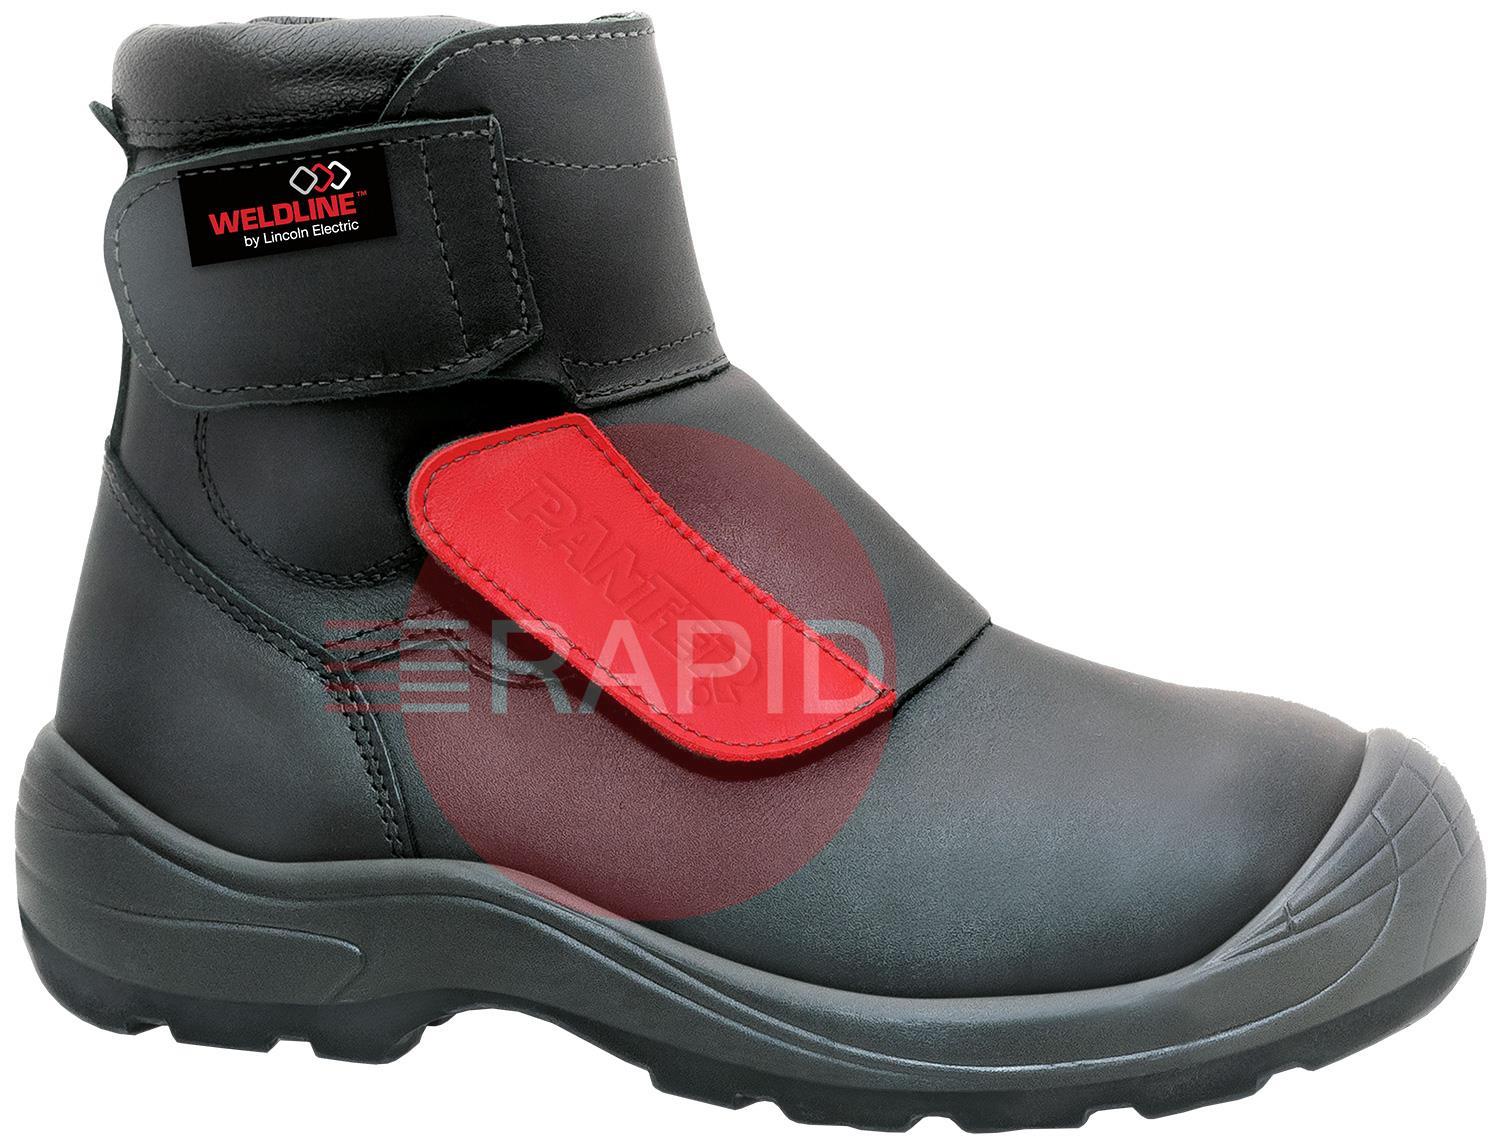 W49S3T40  Weldline Panter Fusion 49 S3 Welding Shoes - Size 40